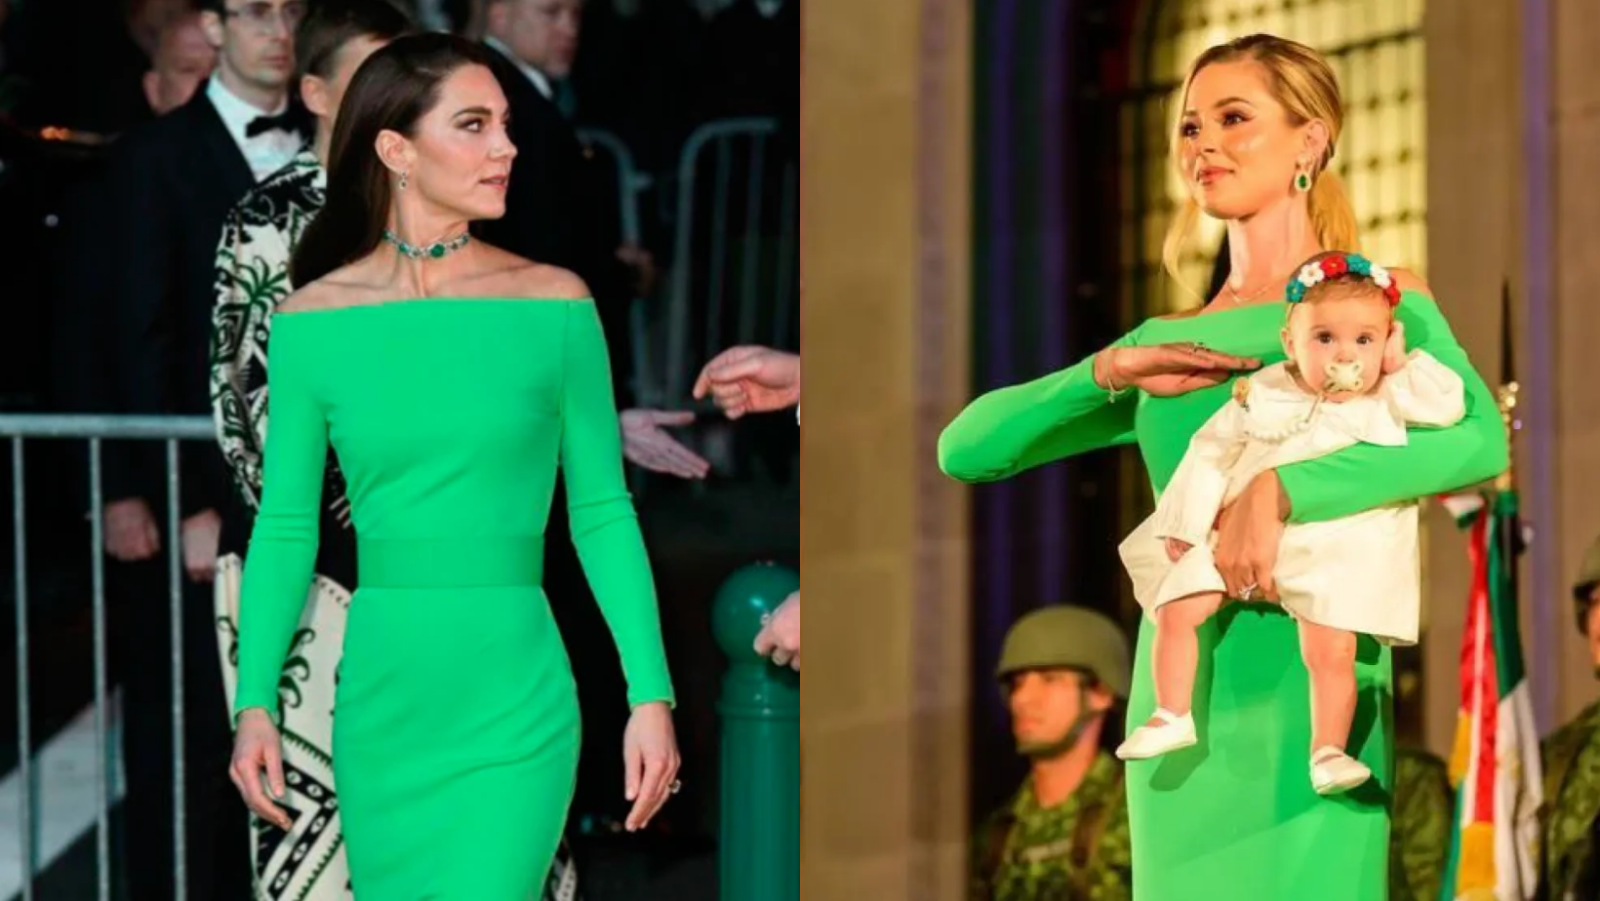 Mariana Rodríguez, esposa del gobernador de Nuevo León, y Kate Middleton, princesa de Gales, usan el mismo vestido